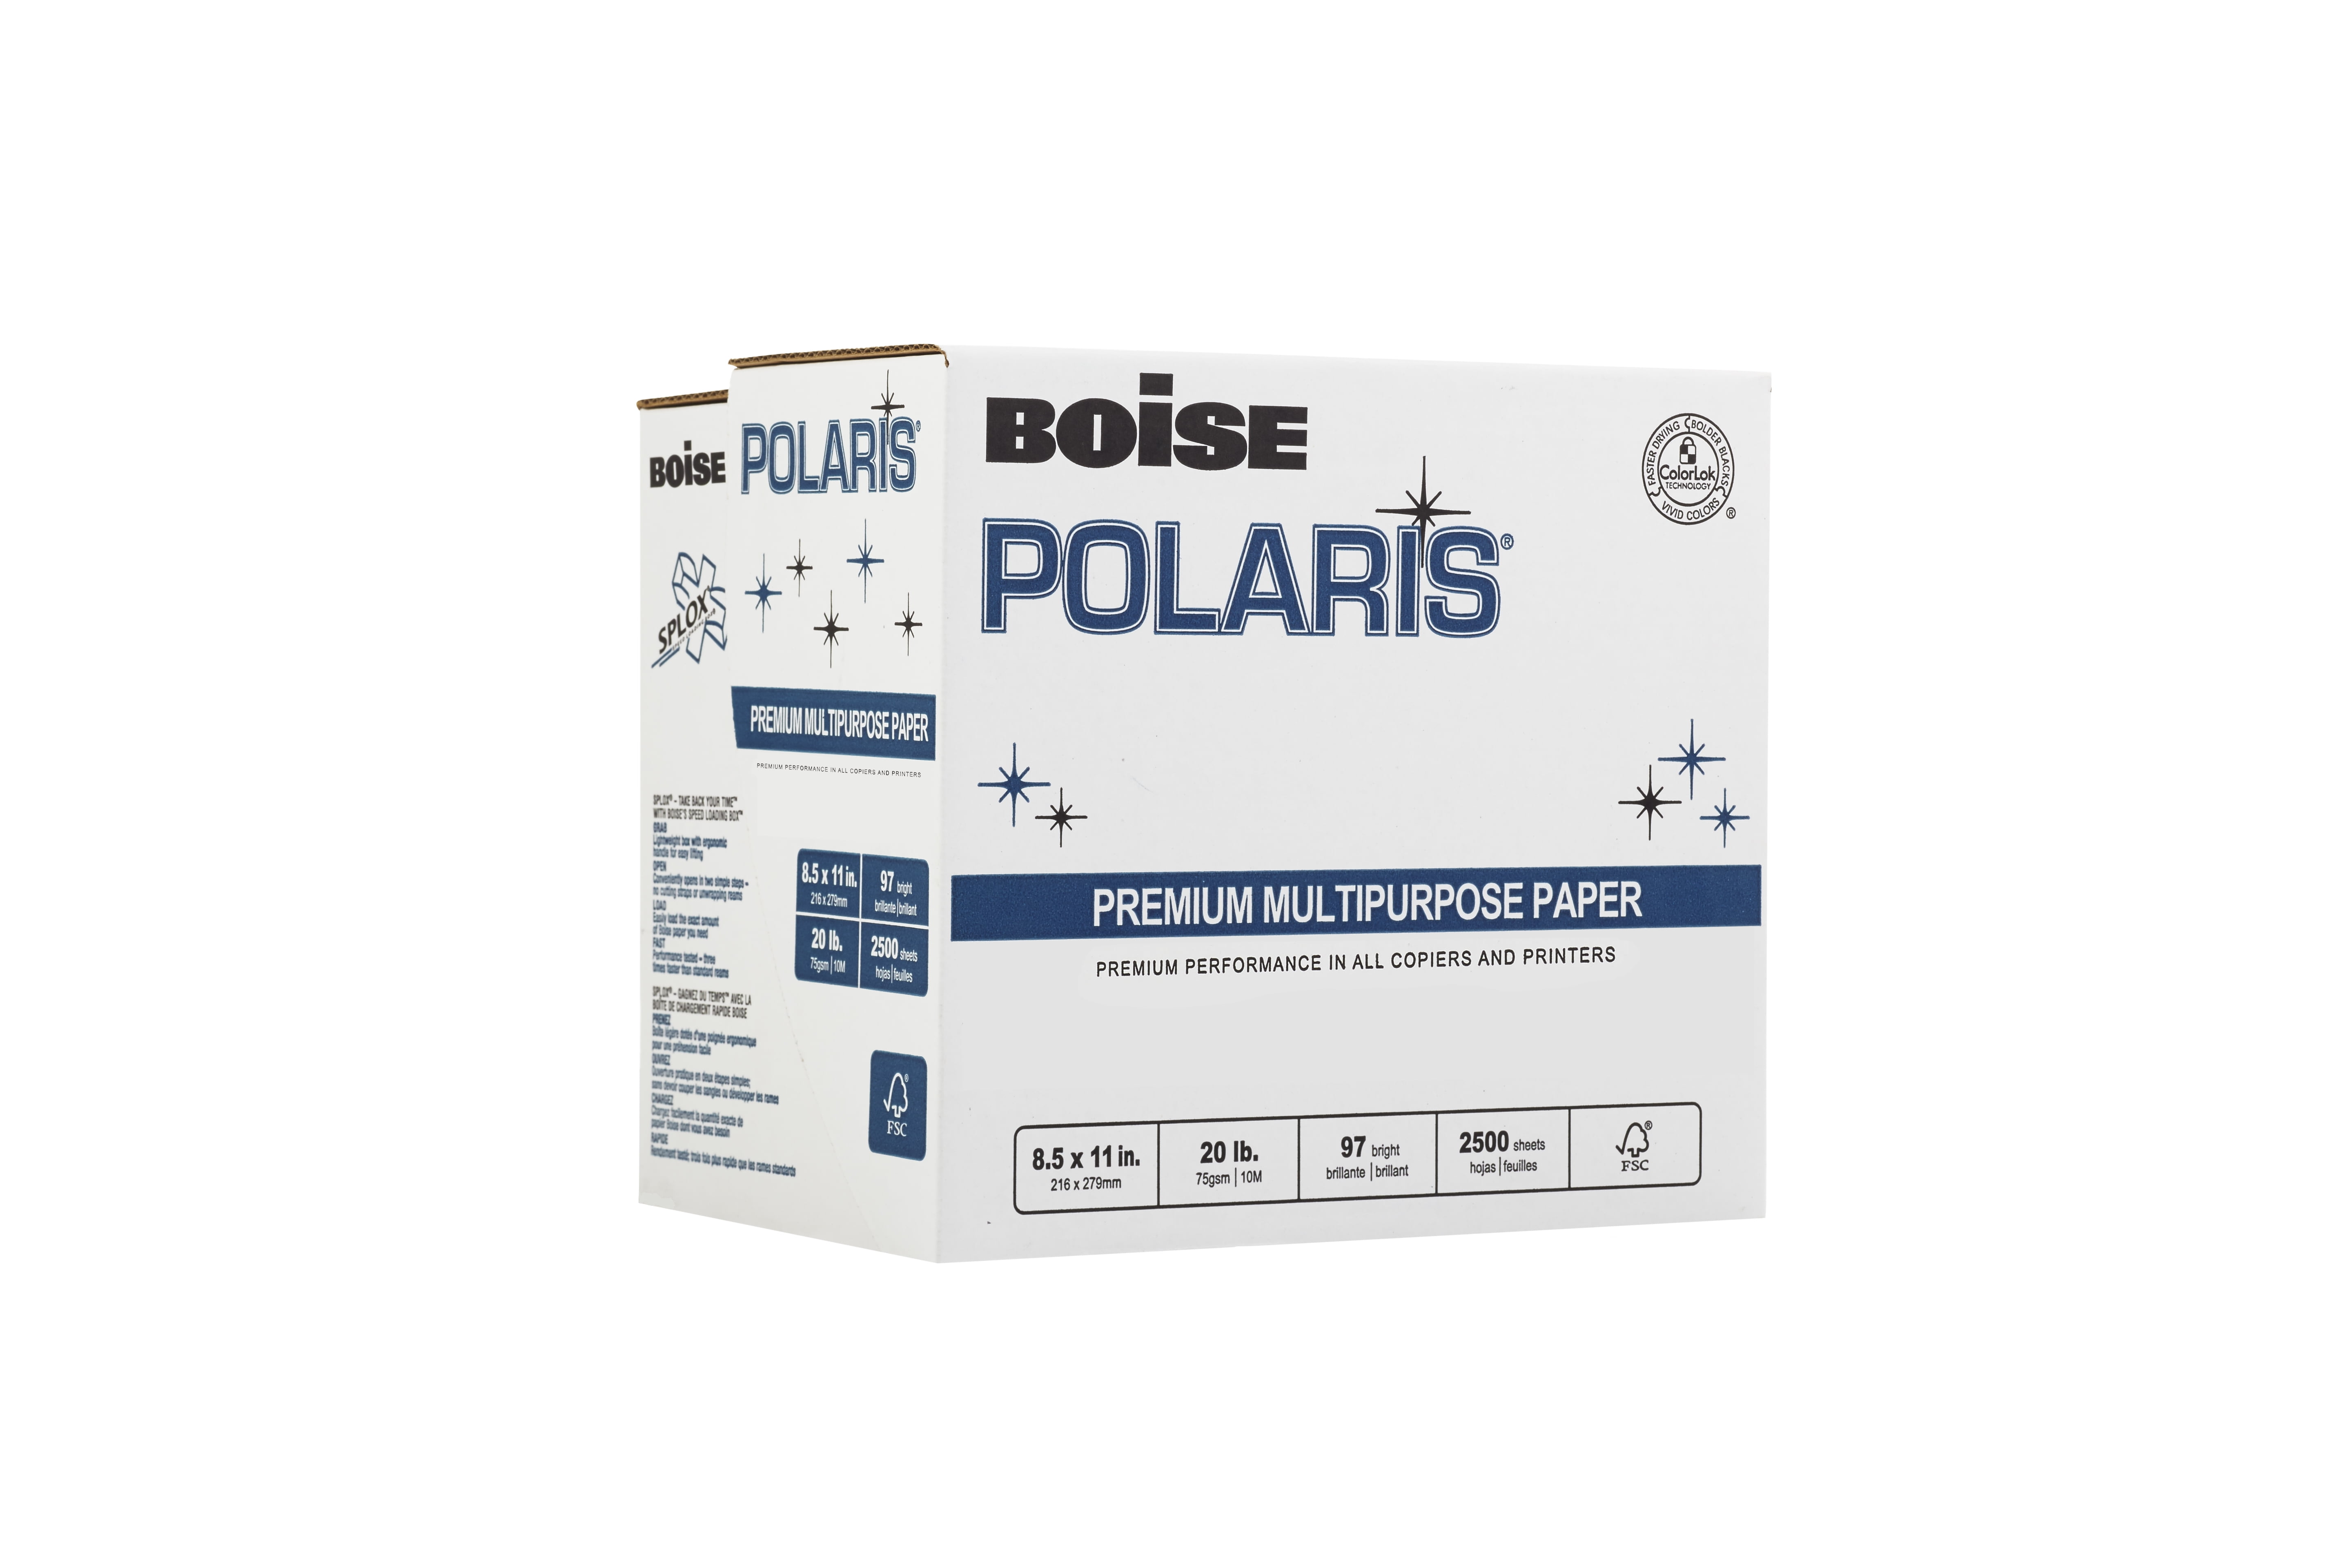 97 Bright White BOISE POLARIS Premium Multipurpose Paper 8.5 x 14 5,000 Sheets 10 ream carton 20 lb 